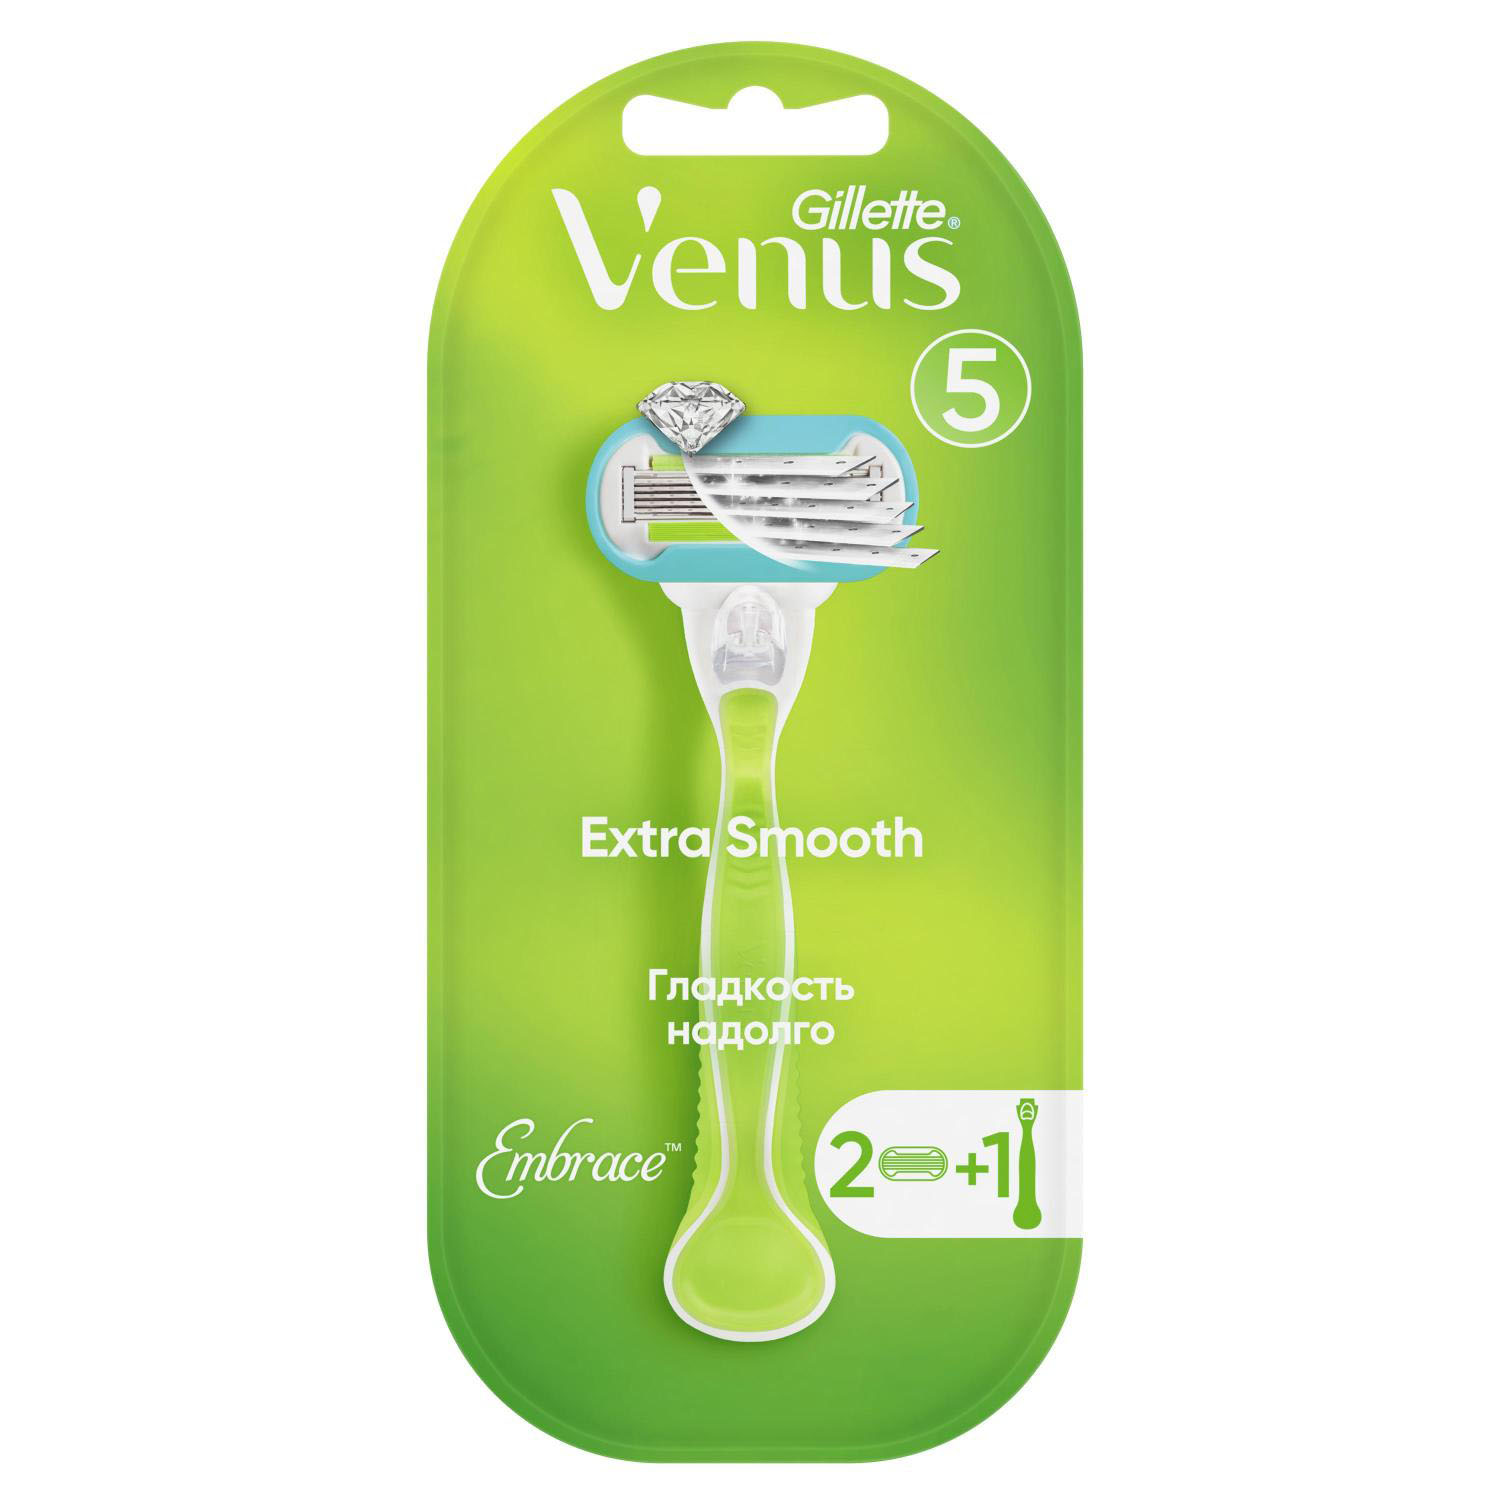 Жиллетт станок для бритья Венус Эмбрейс +2кассеты жиллетт кассеты венус эмбрейс 4